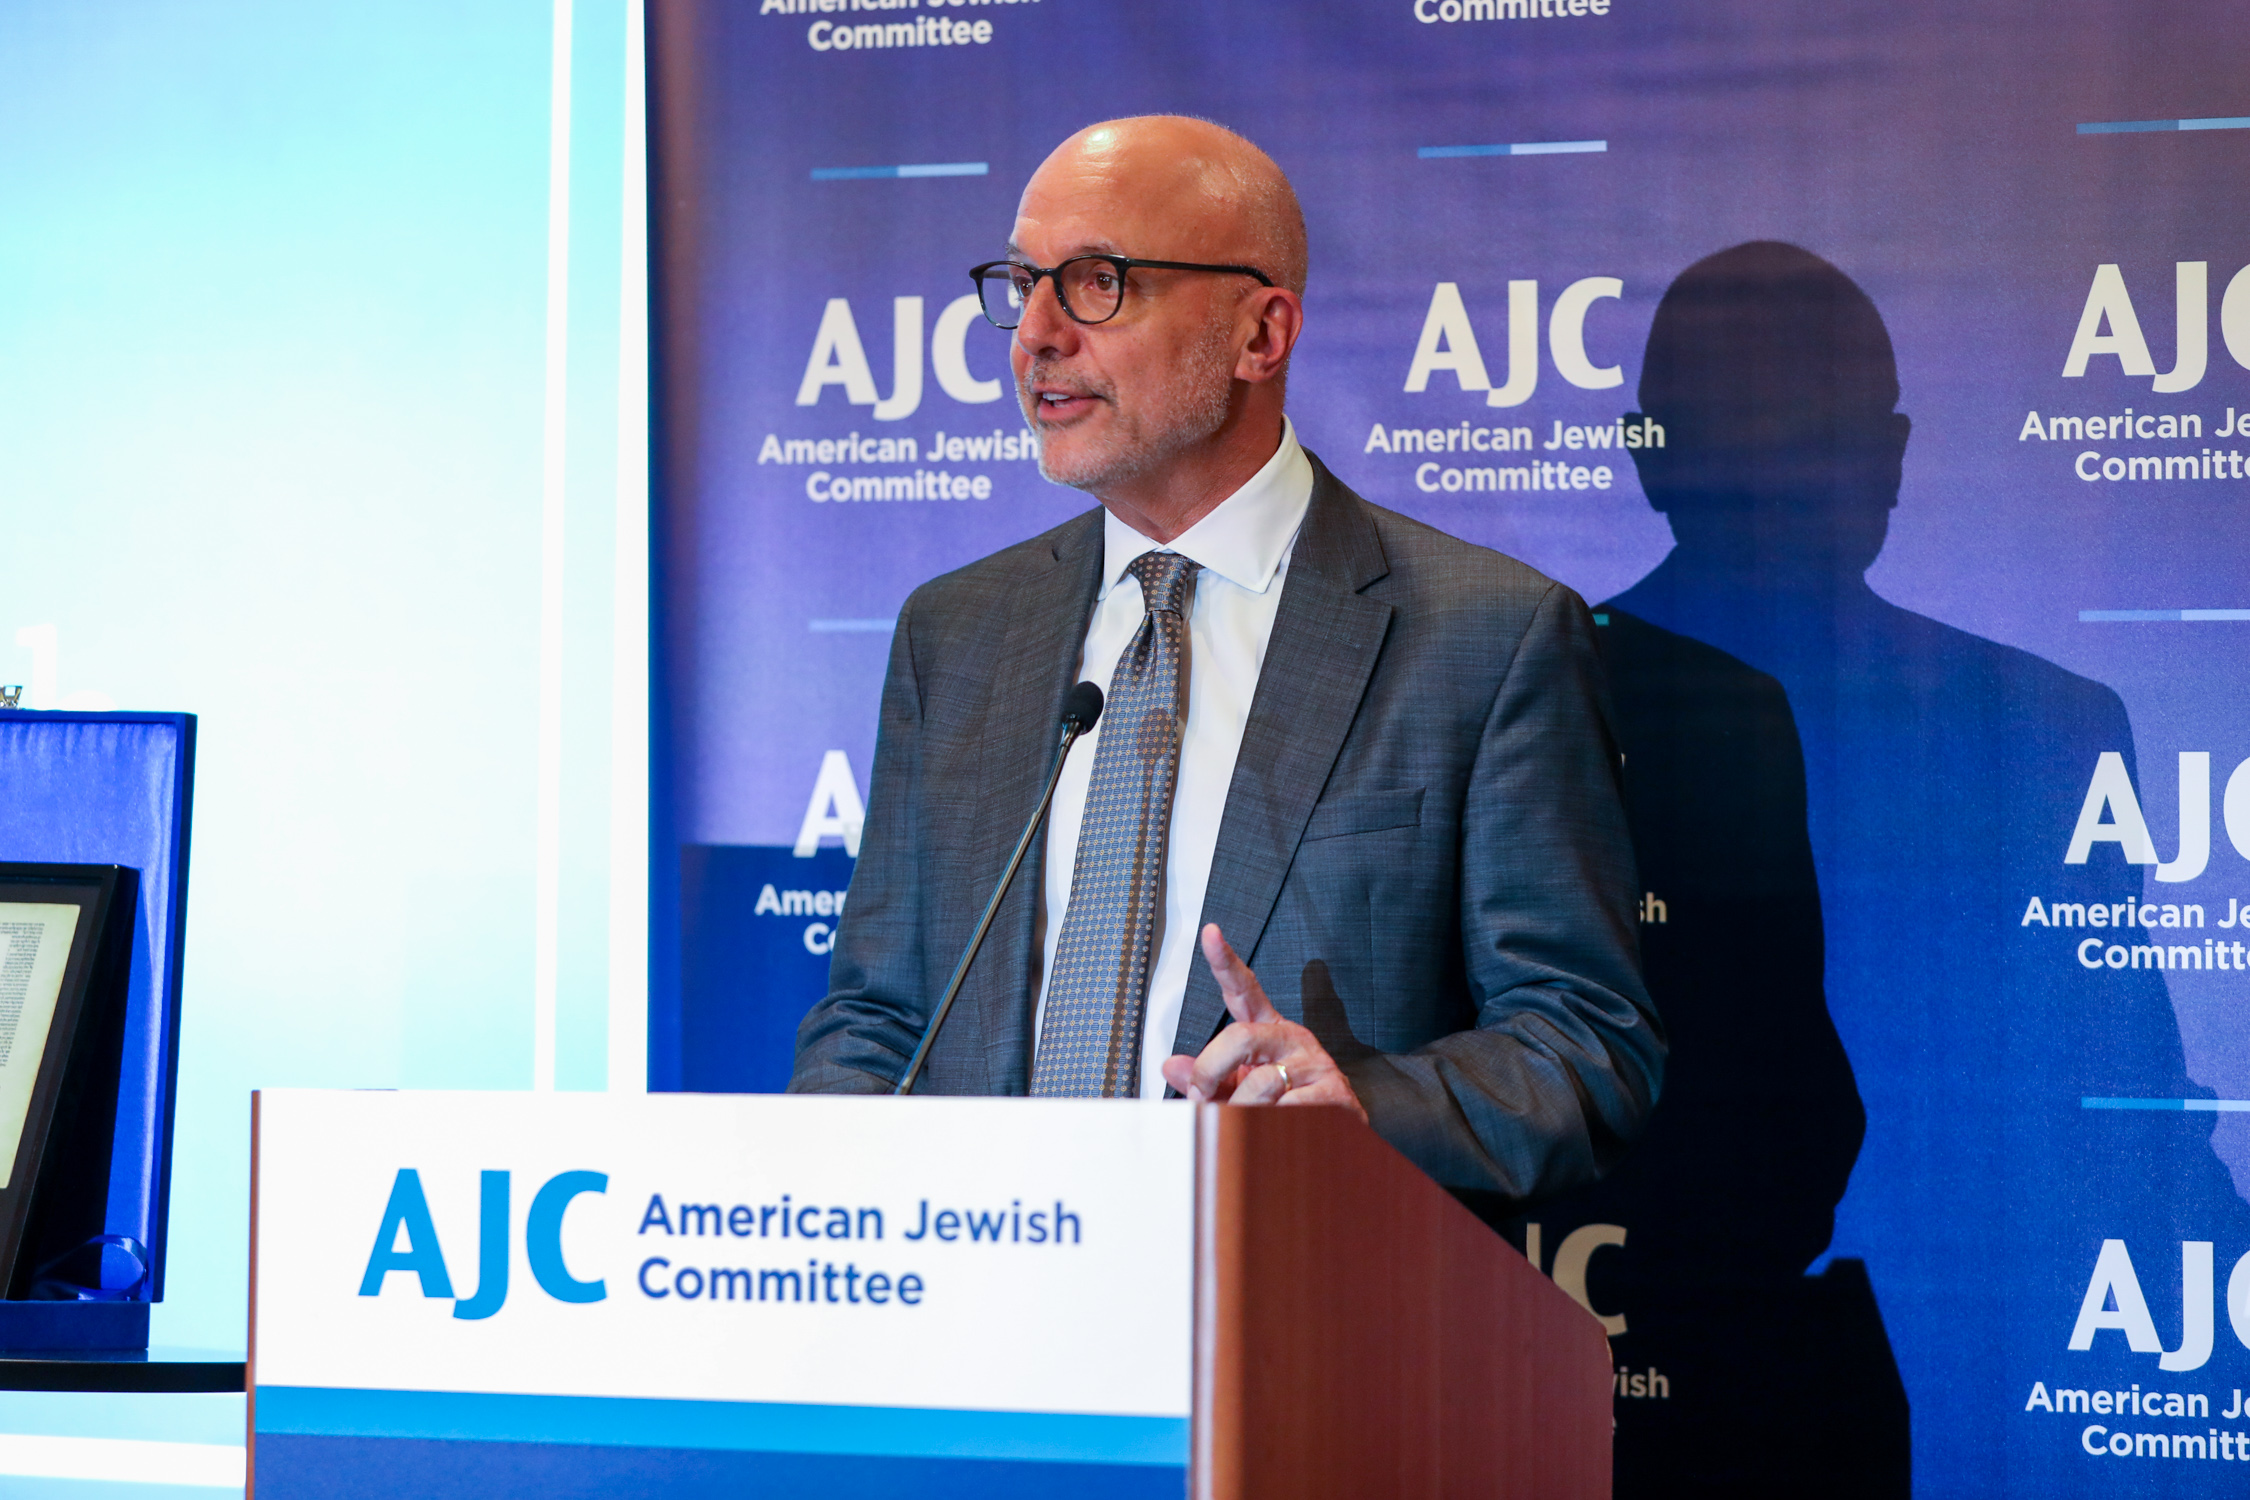 AJC CEO Ted Deutch paid tribute to Shaykh Bin Bayyah